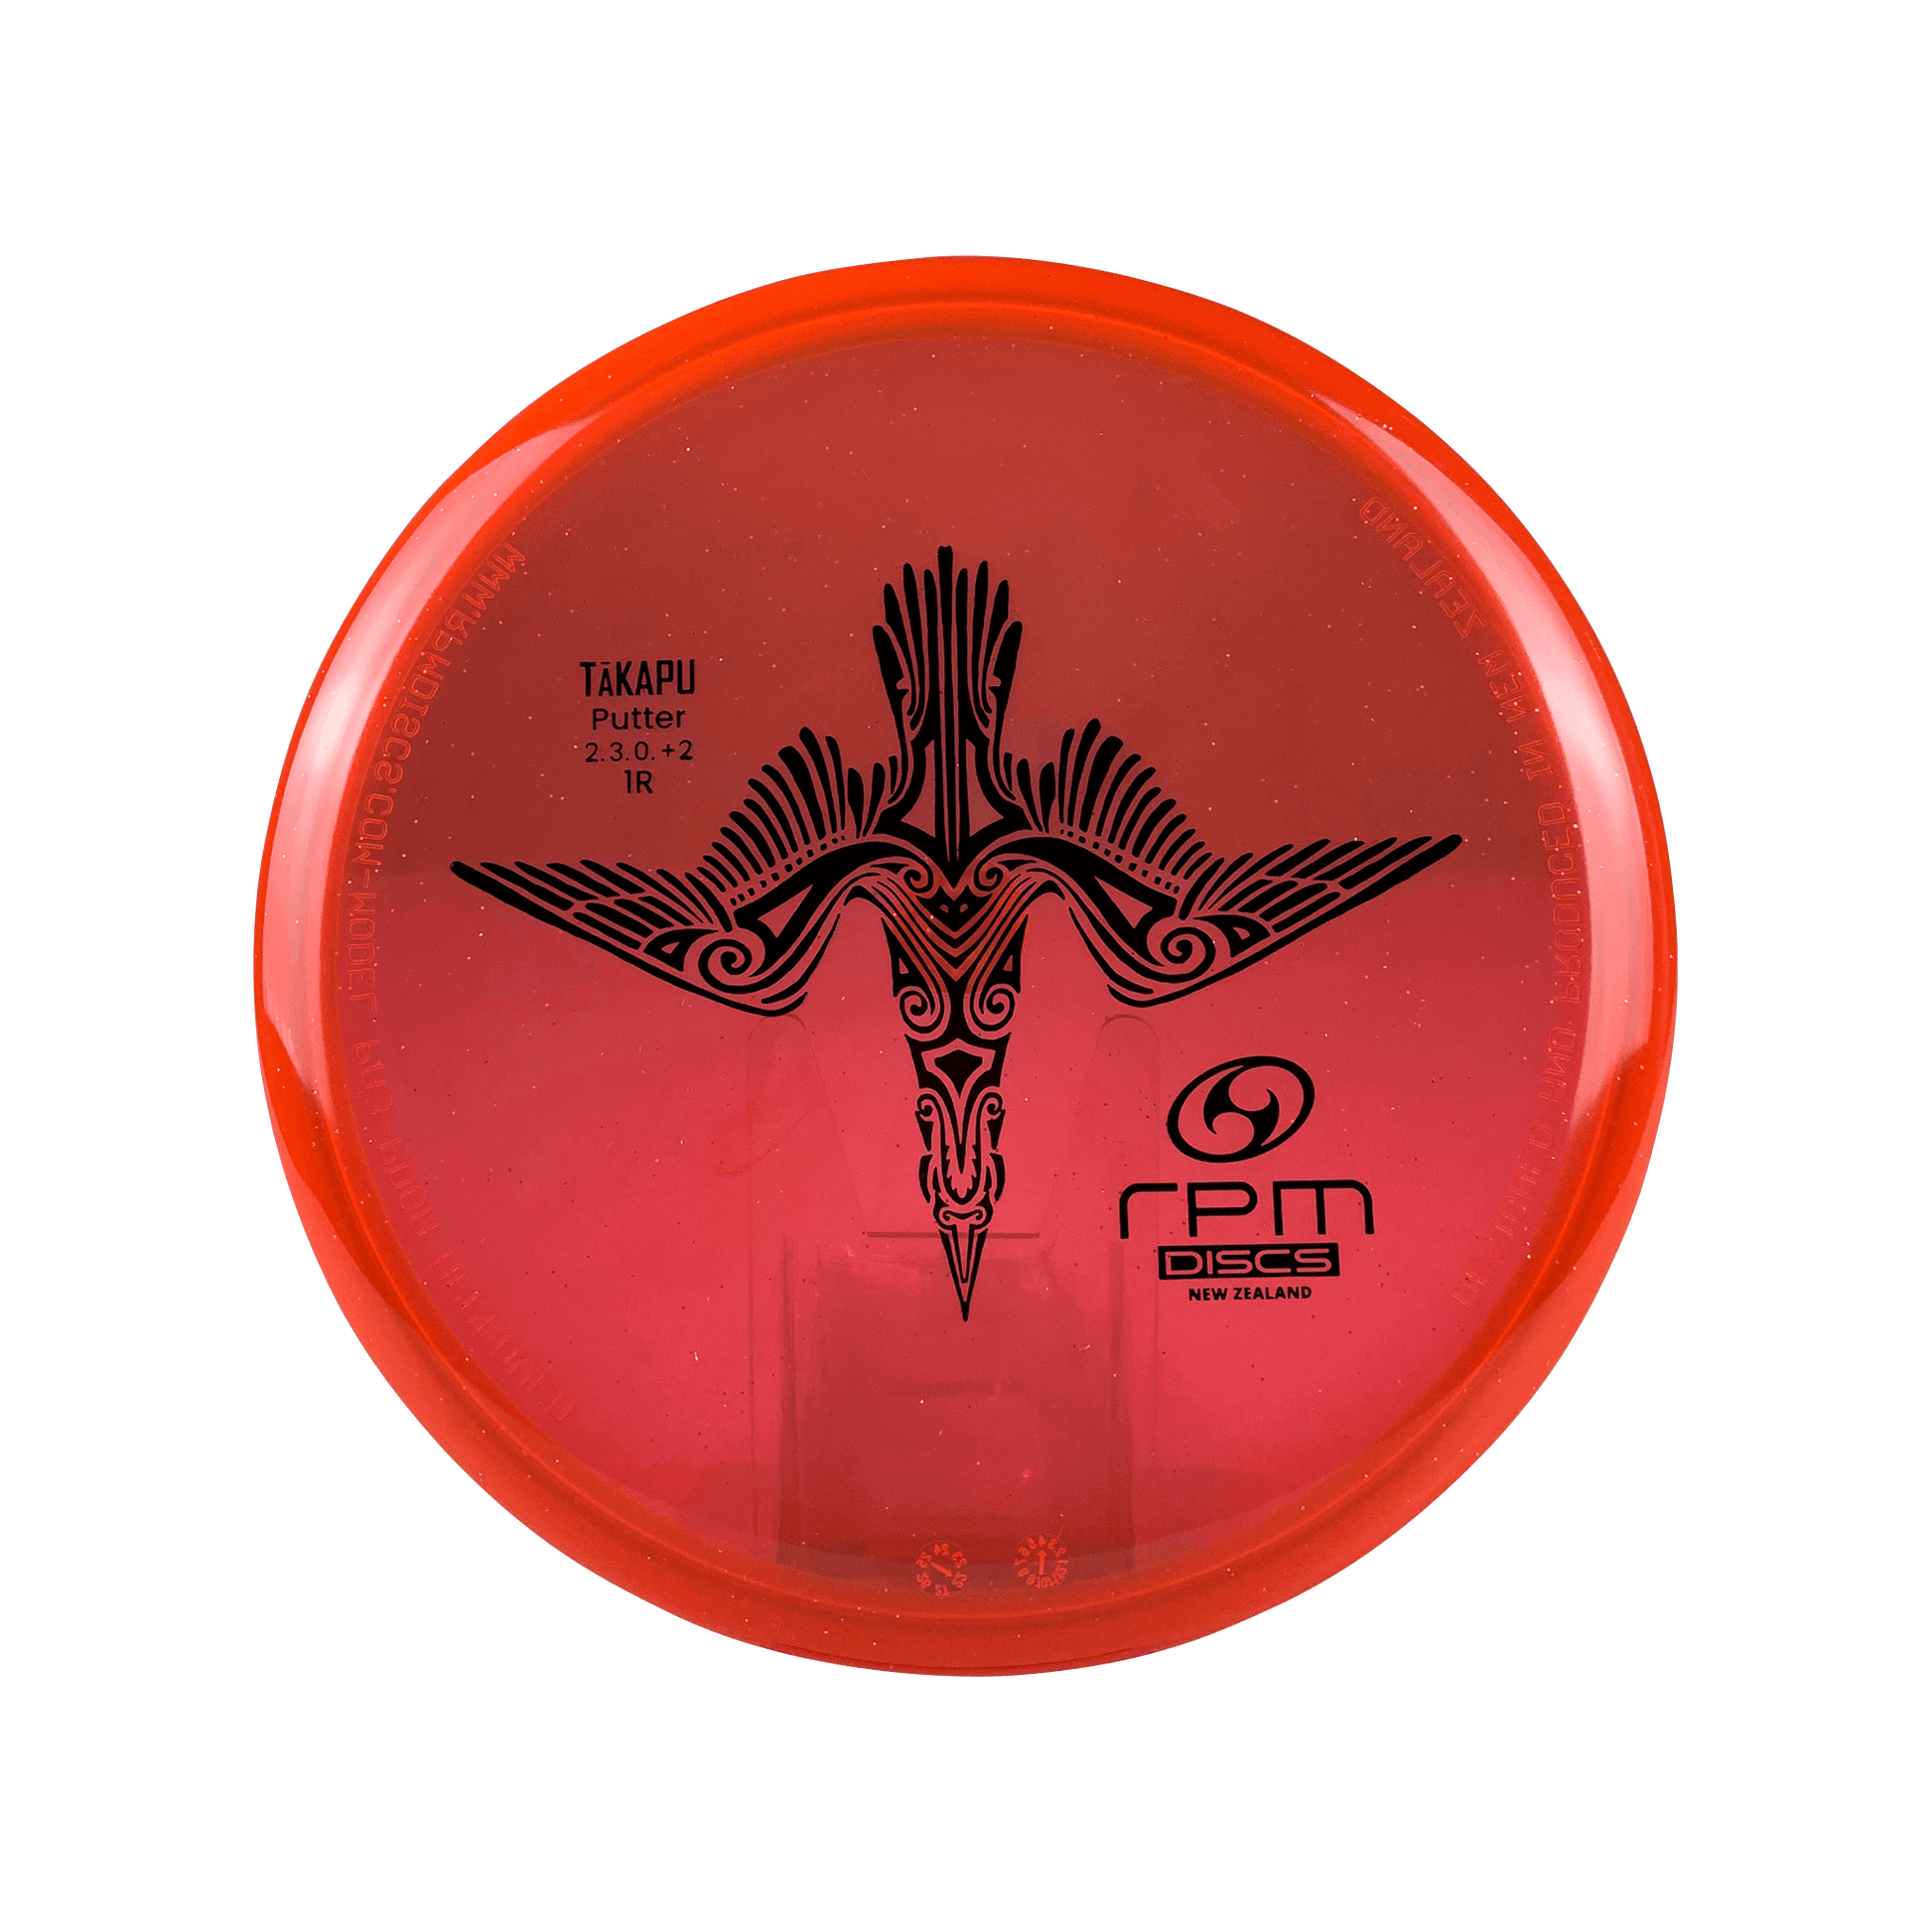 Cosmic Takapu - First Run Disc RPM Discs red 171 